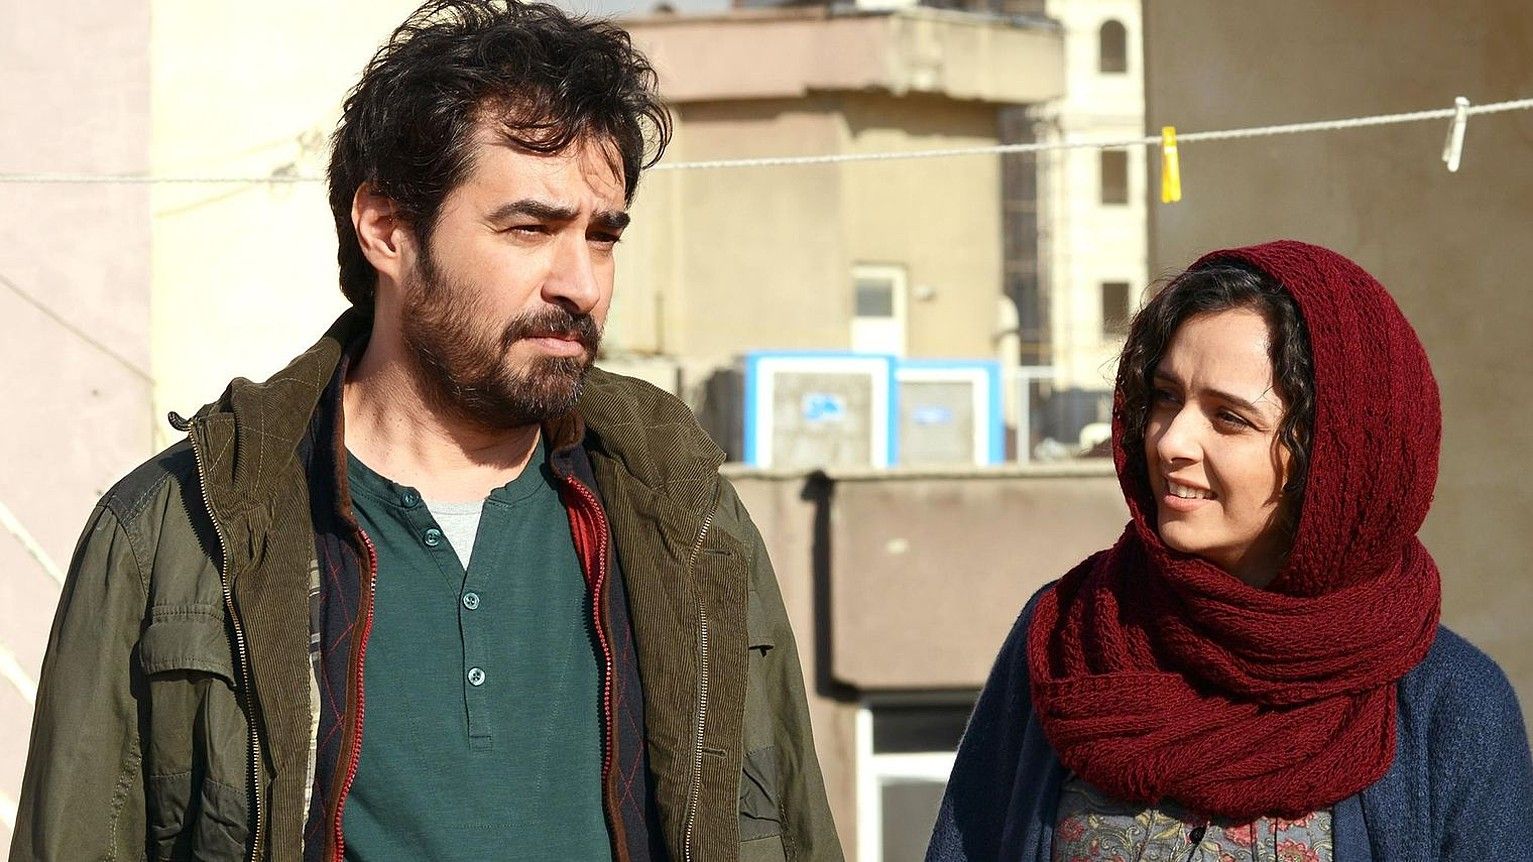 Shahab Hosseini eta Taraneh Alidoosti aktoreak, Forushande pelikulako protagonistak. BERRIA.